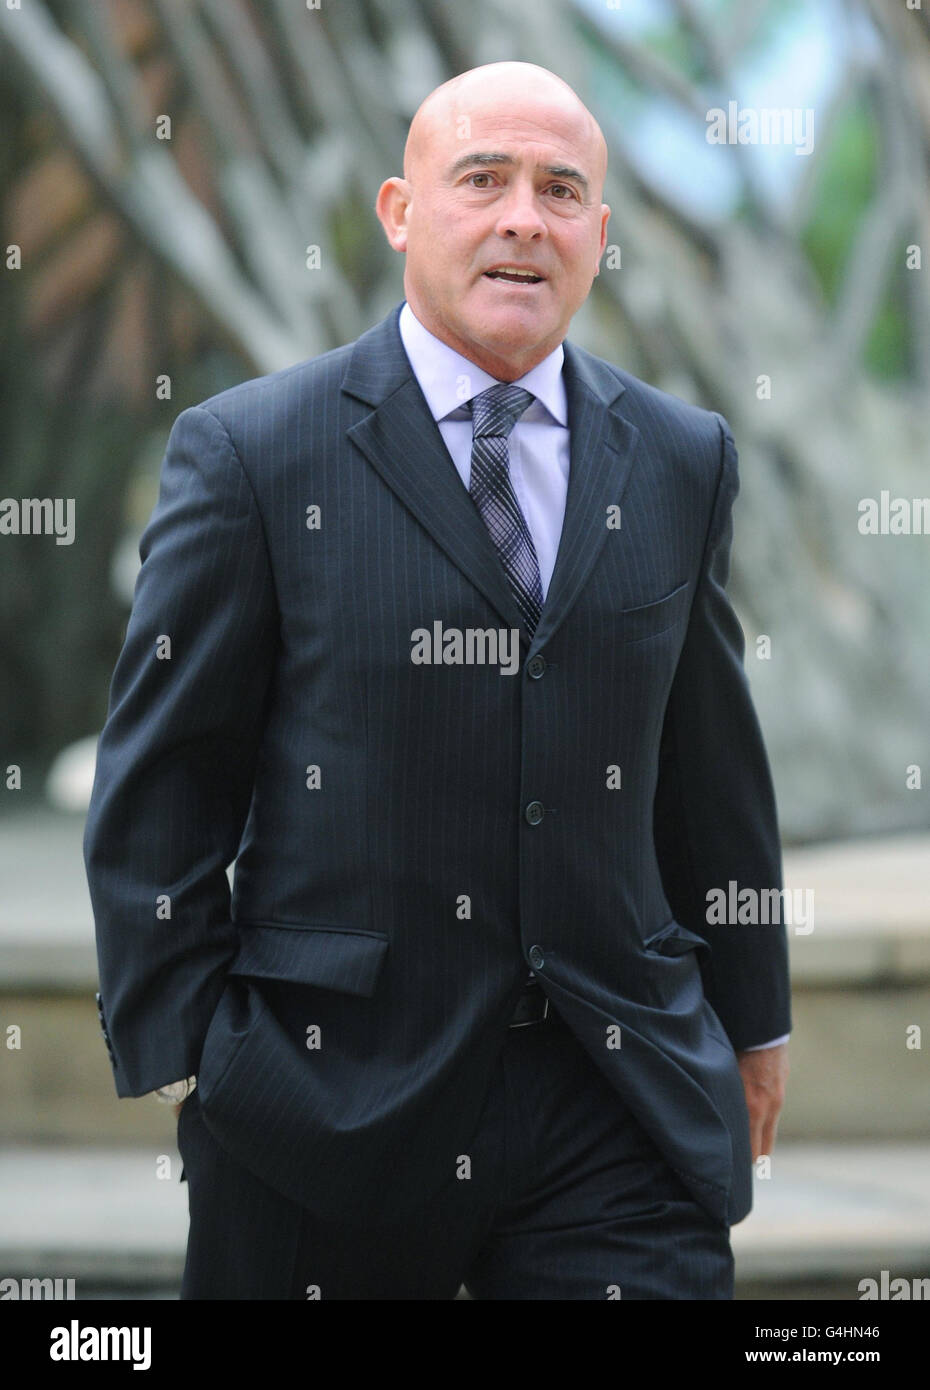 Robert Stewart, the father of murder victim Marie Stewart, arrives at Bradford Crown Court. Stock Photo